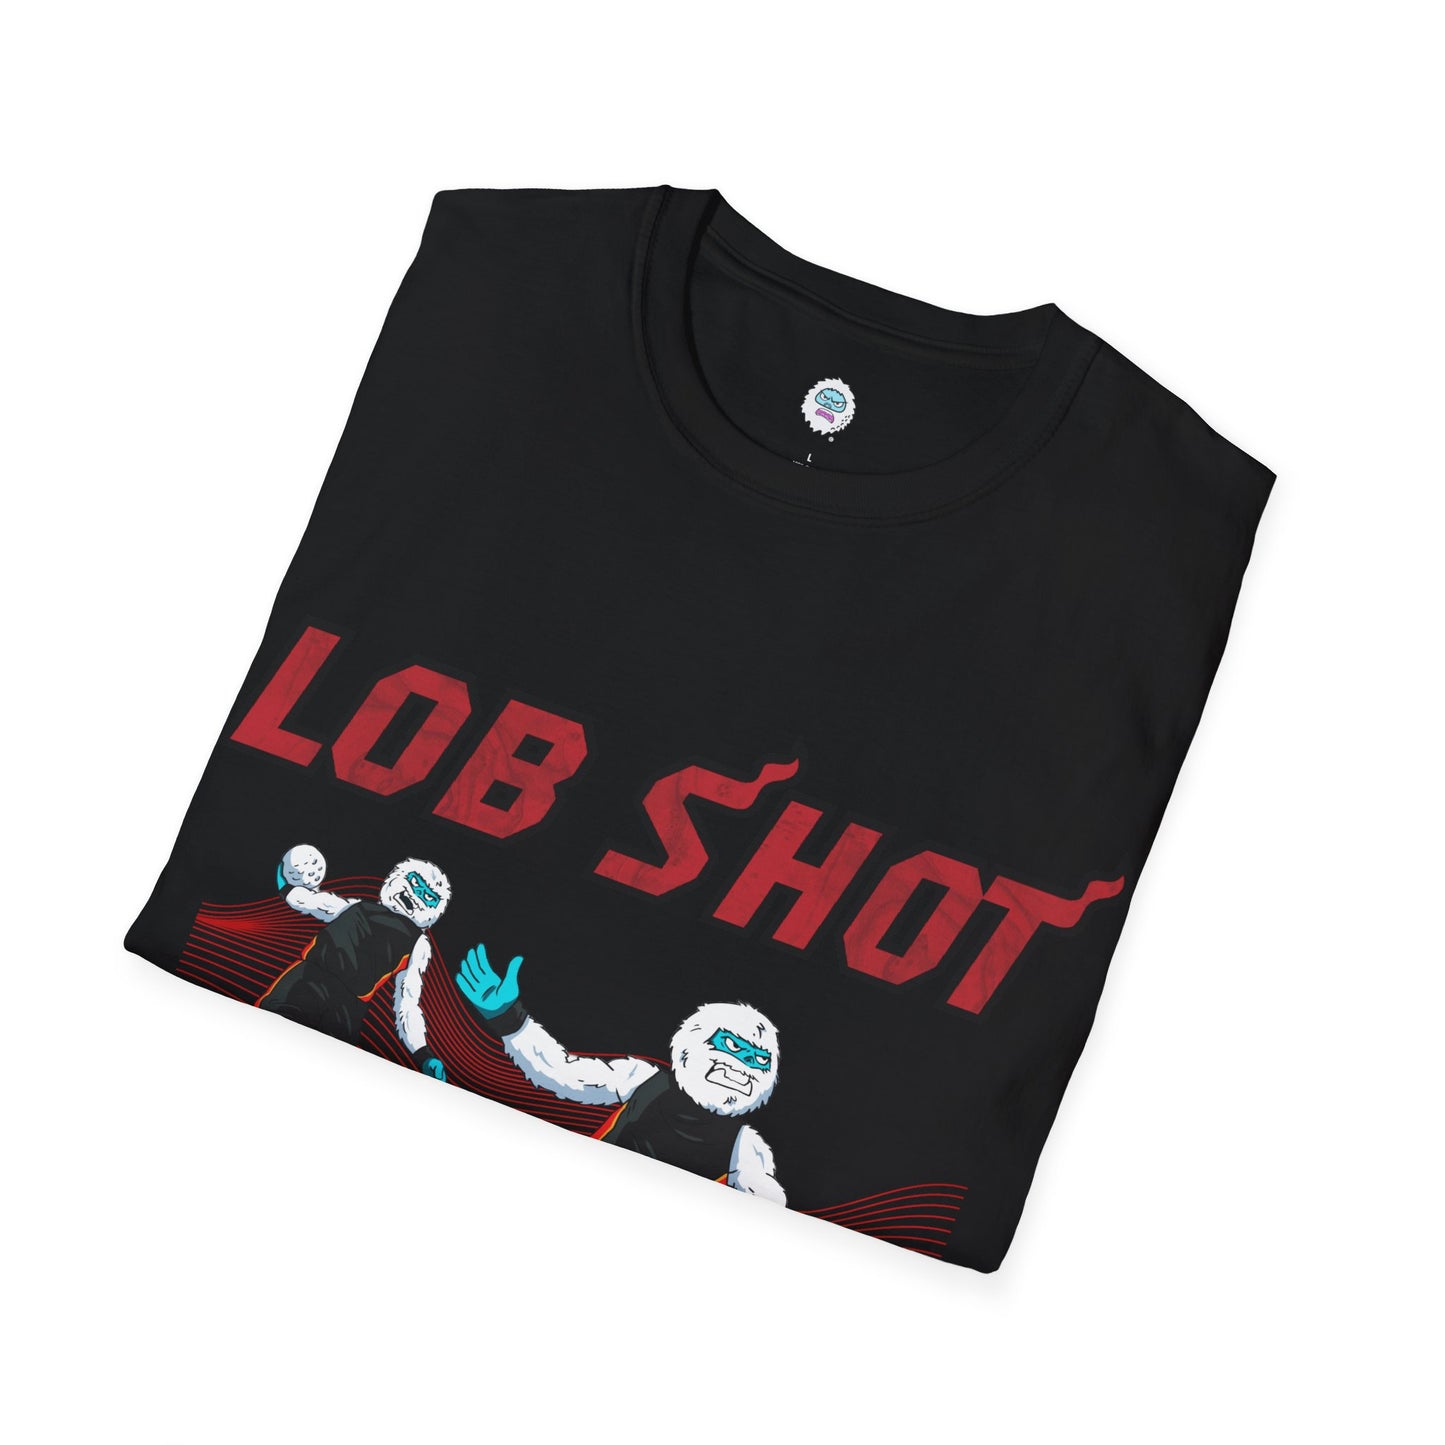 Lob Shot T-Shirt